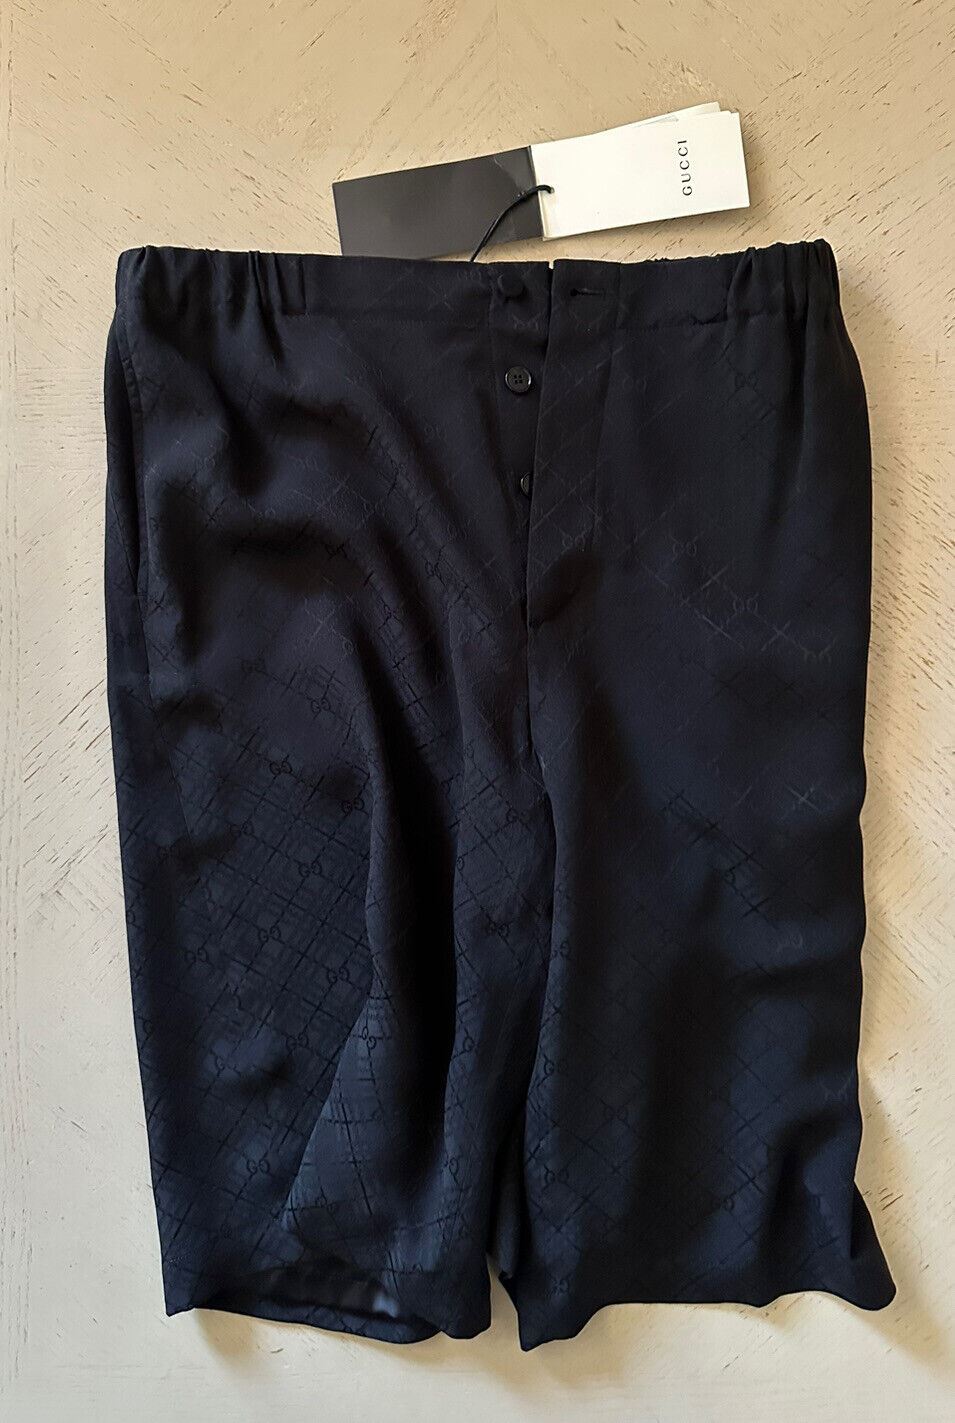 Neu mit Etikett: 1100 $ Gucci Herren-Shorts aus Seide mit GG-Monogramm, Schwarz, 28 US/44 Eu